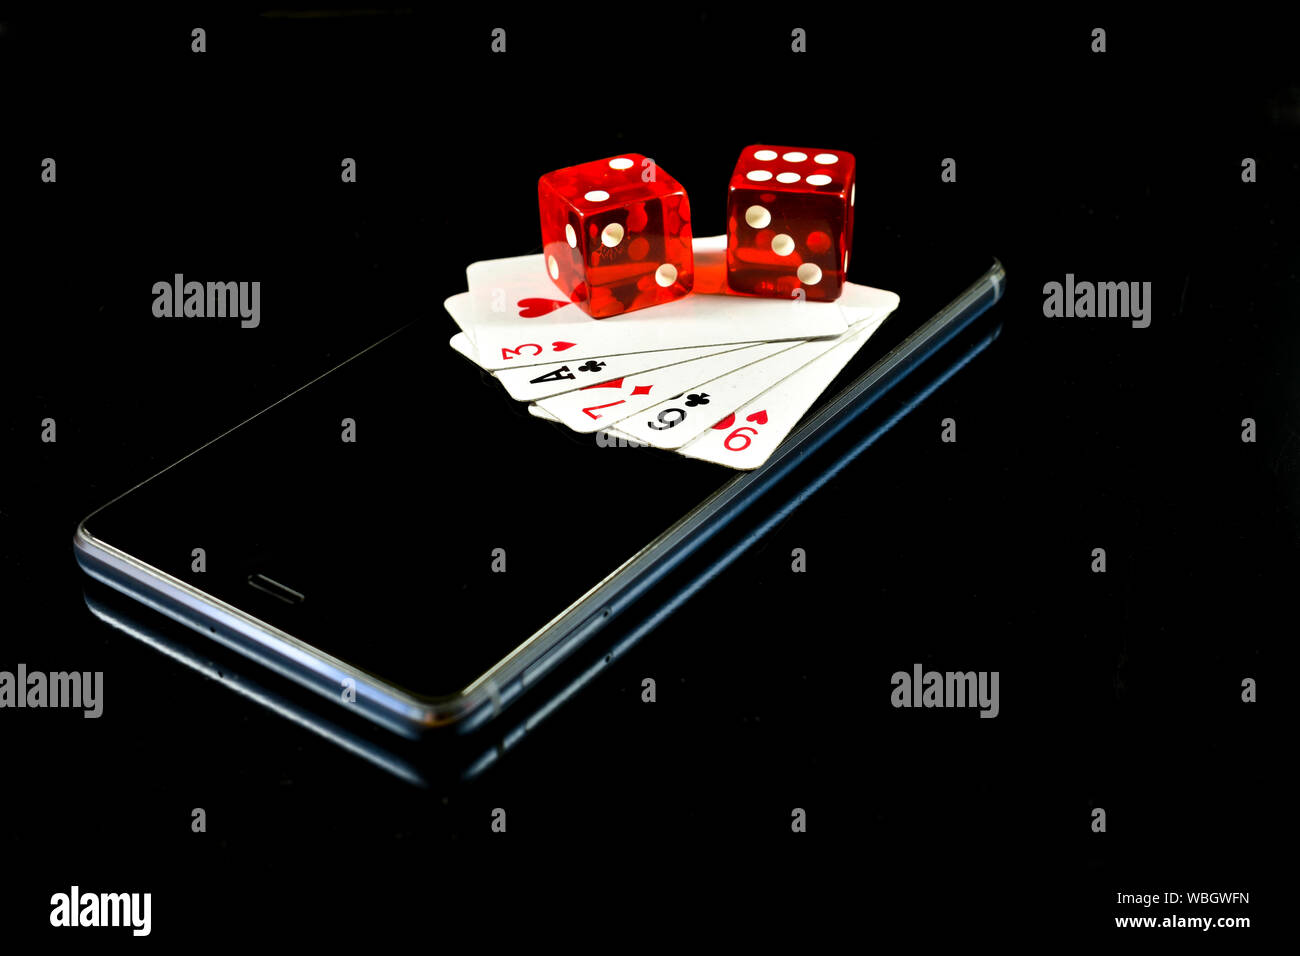 Handy auf schwarzen Hintergrund mit mehreren Karten und roten Würfel auf dem Display, konzeptionelle Bild über Mobile Game Industry Stockfoto